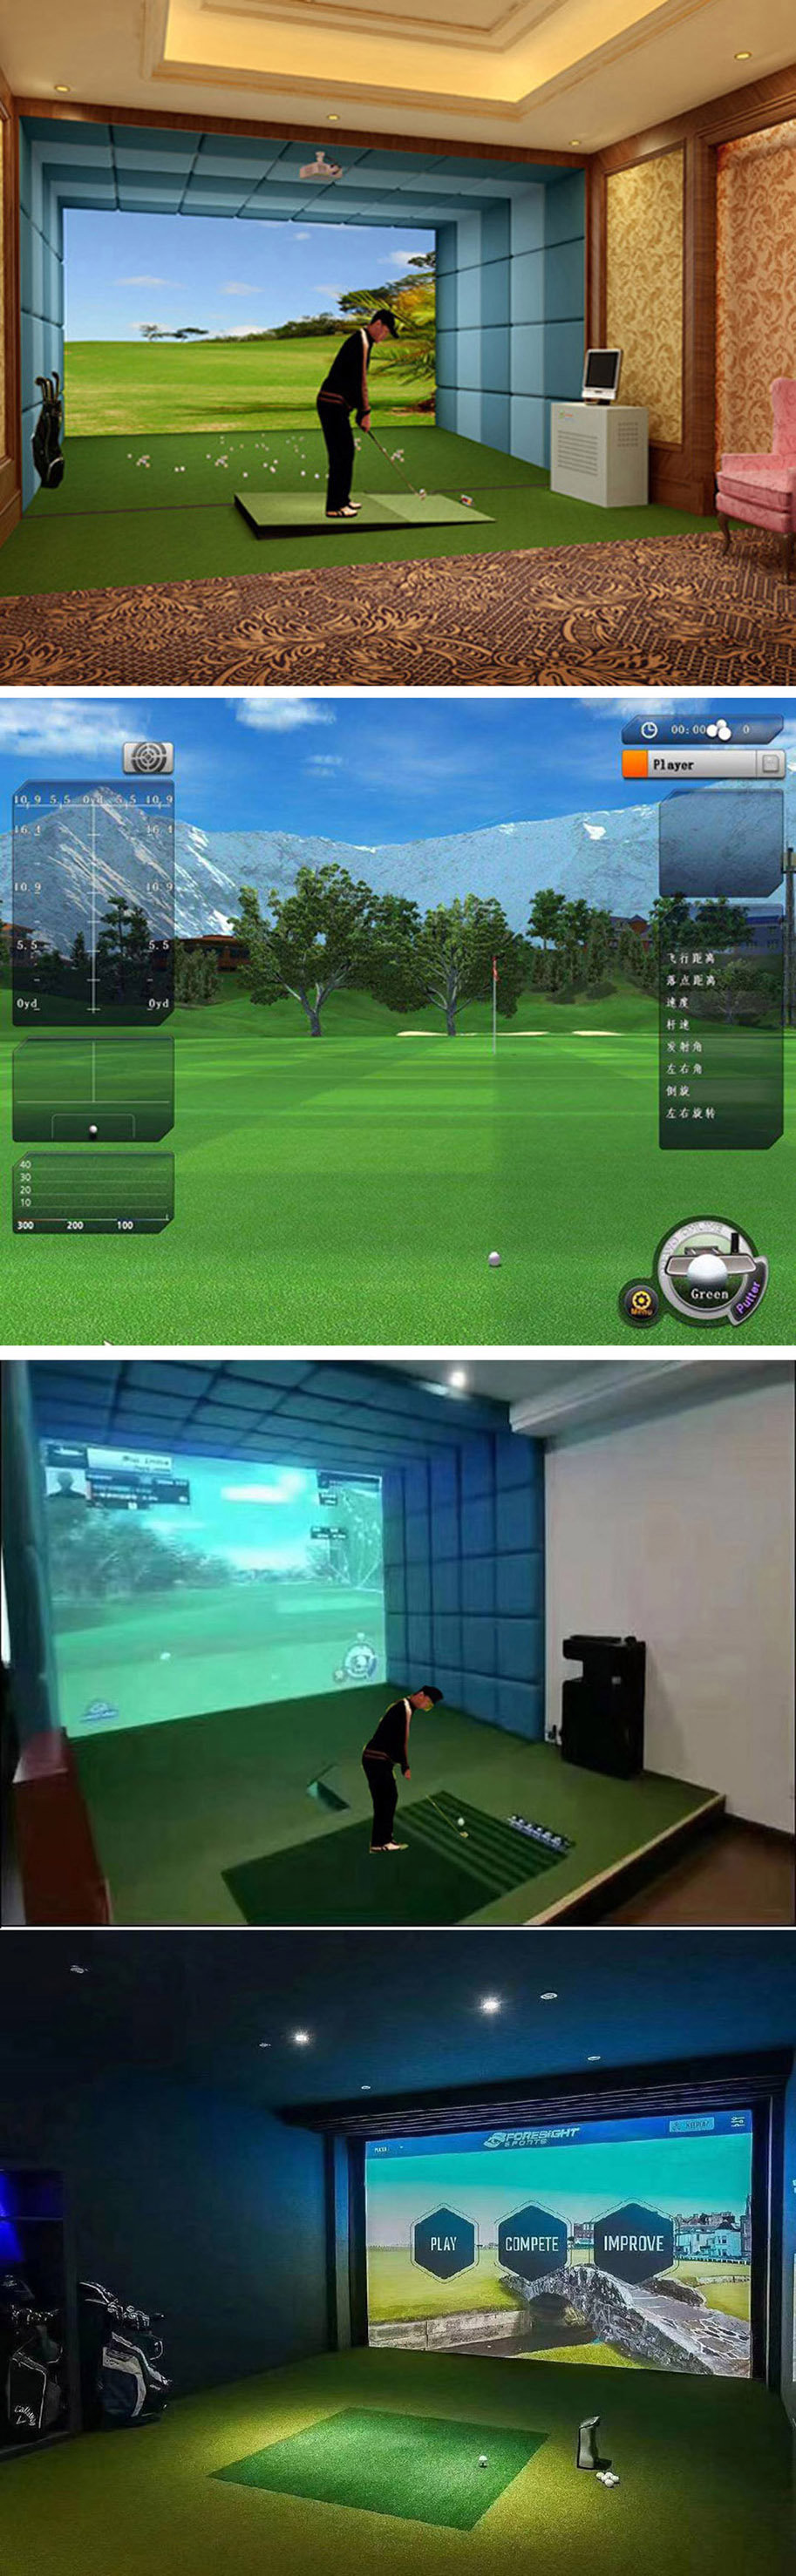 室内高尔夫球场系统 01.jpg